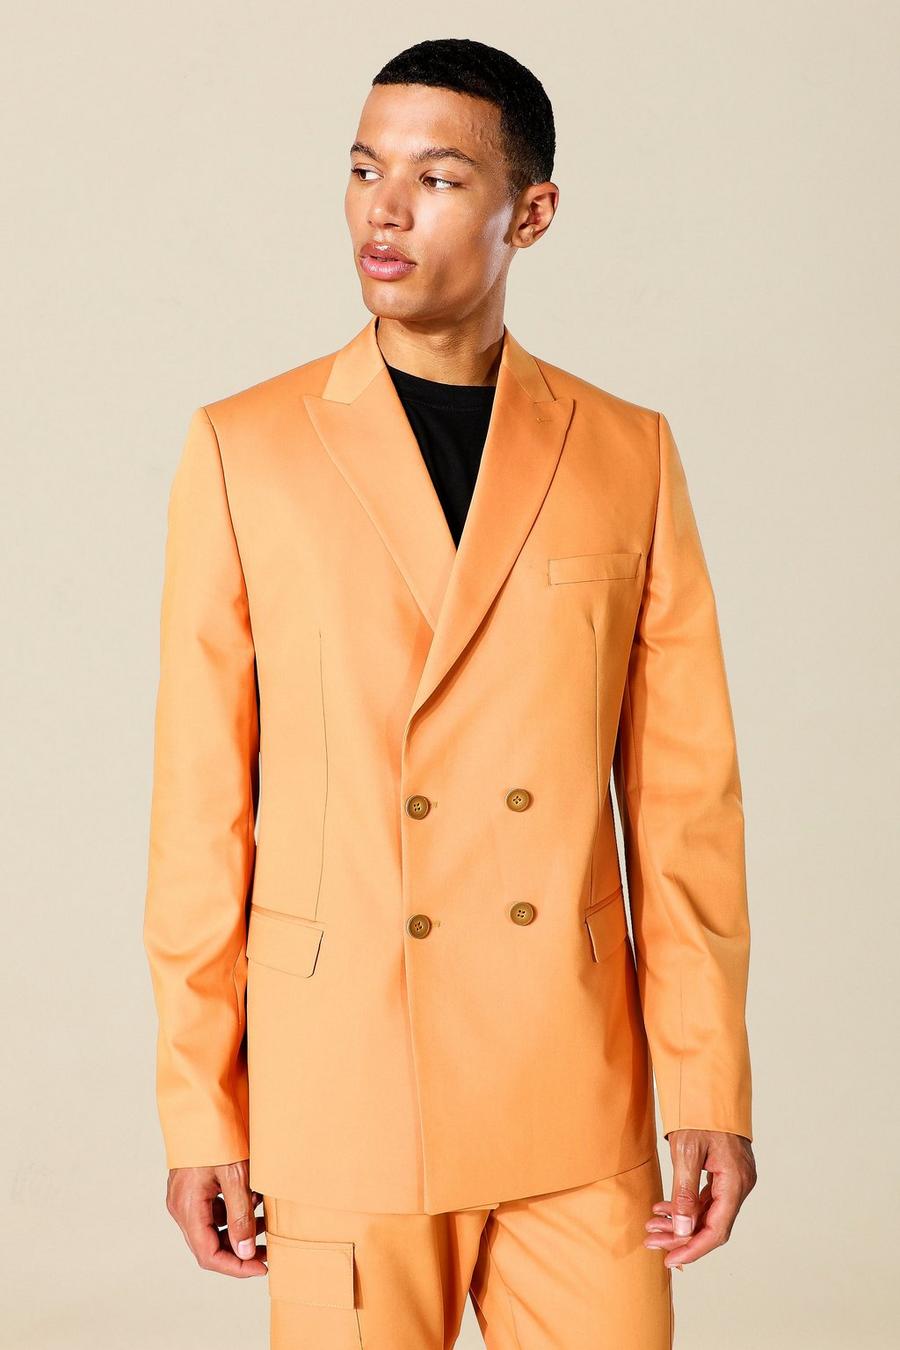 כתום arancio ז'קט חליפה אוברסייז עם דשים כפולים, לגברים גבוהים